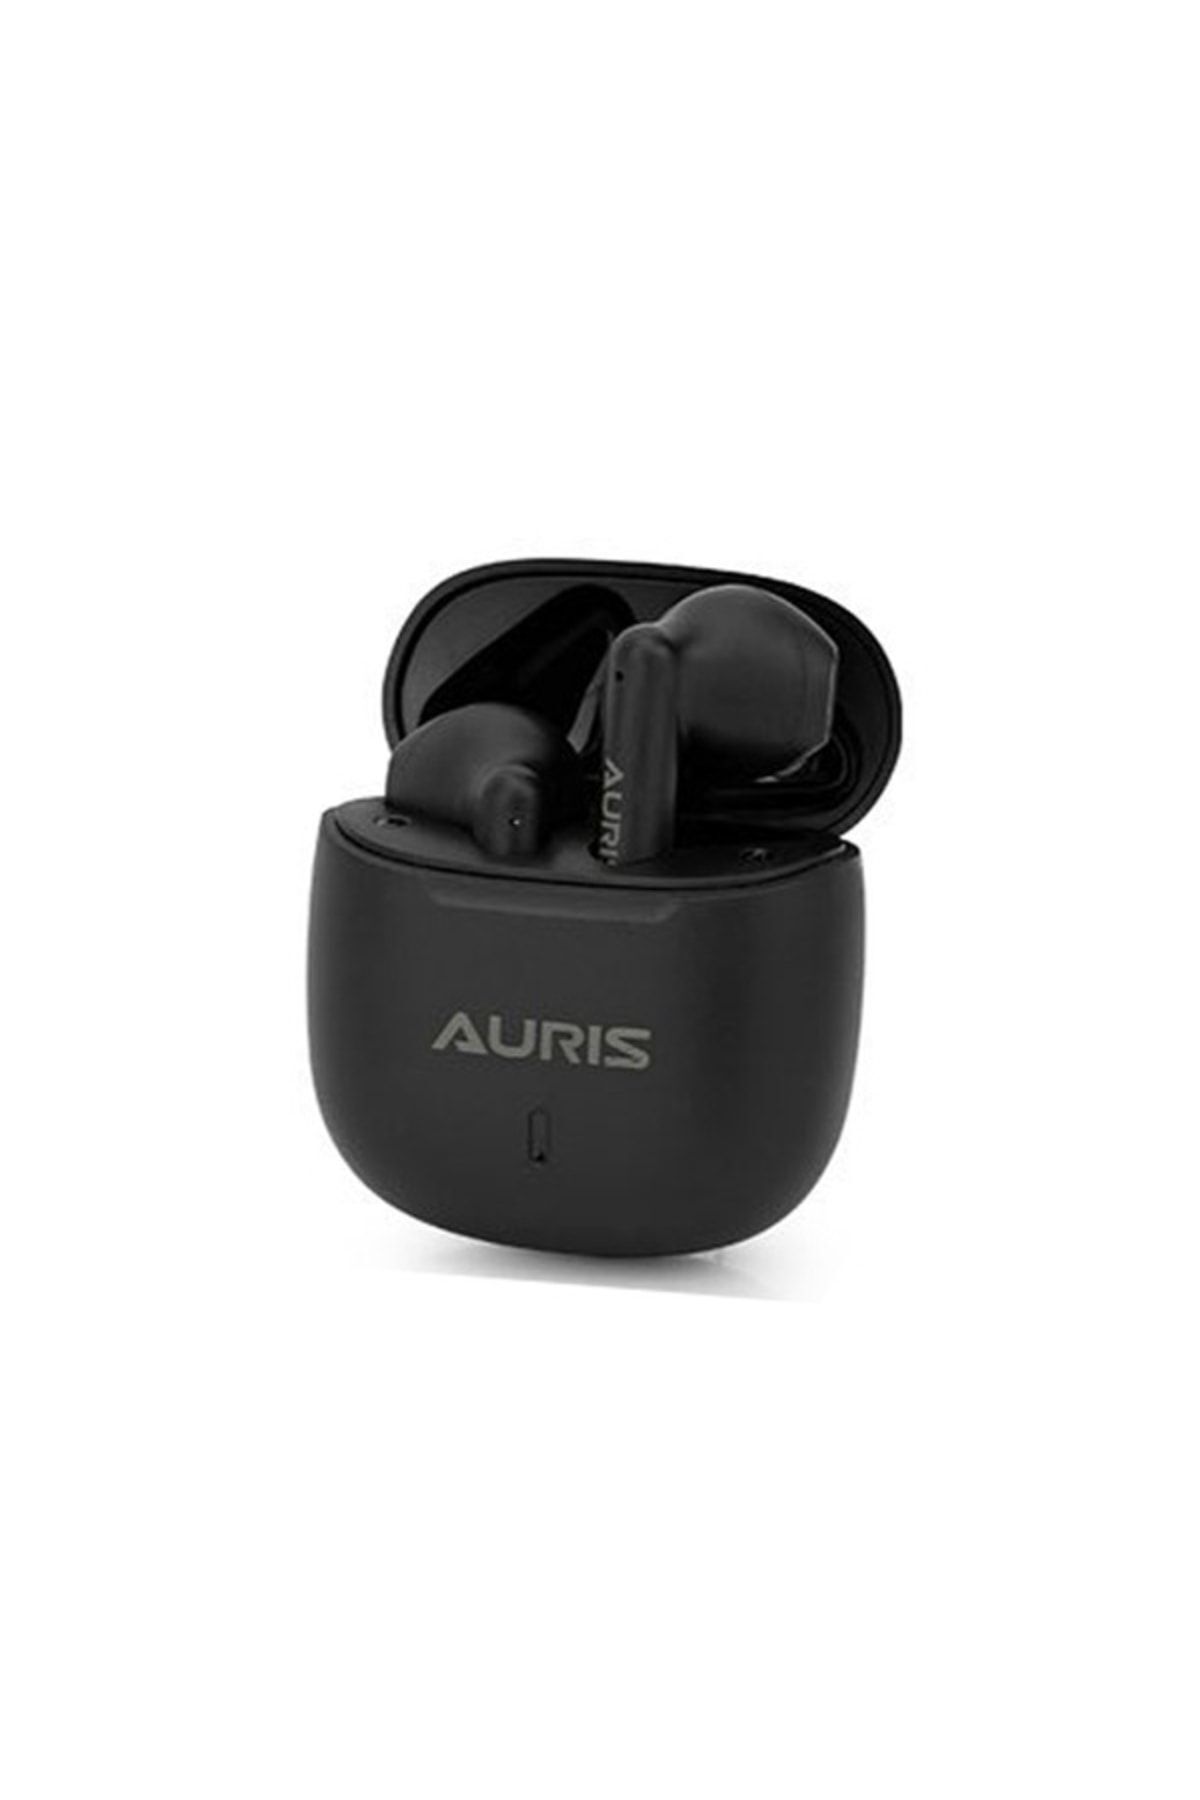 Auris Su Geçirmez Dokunmatik Bluetooth Kulak Içi Kulaklık Tw04